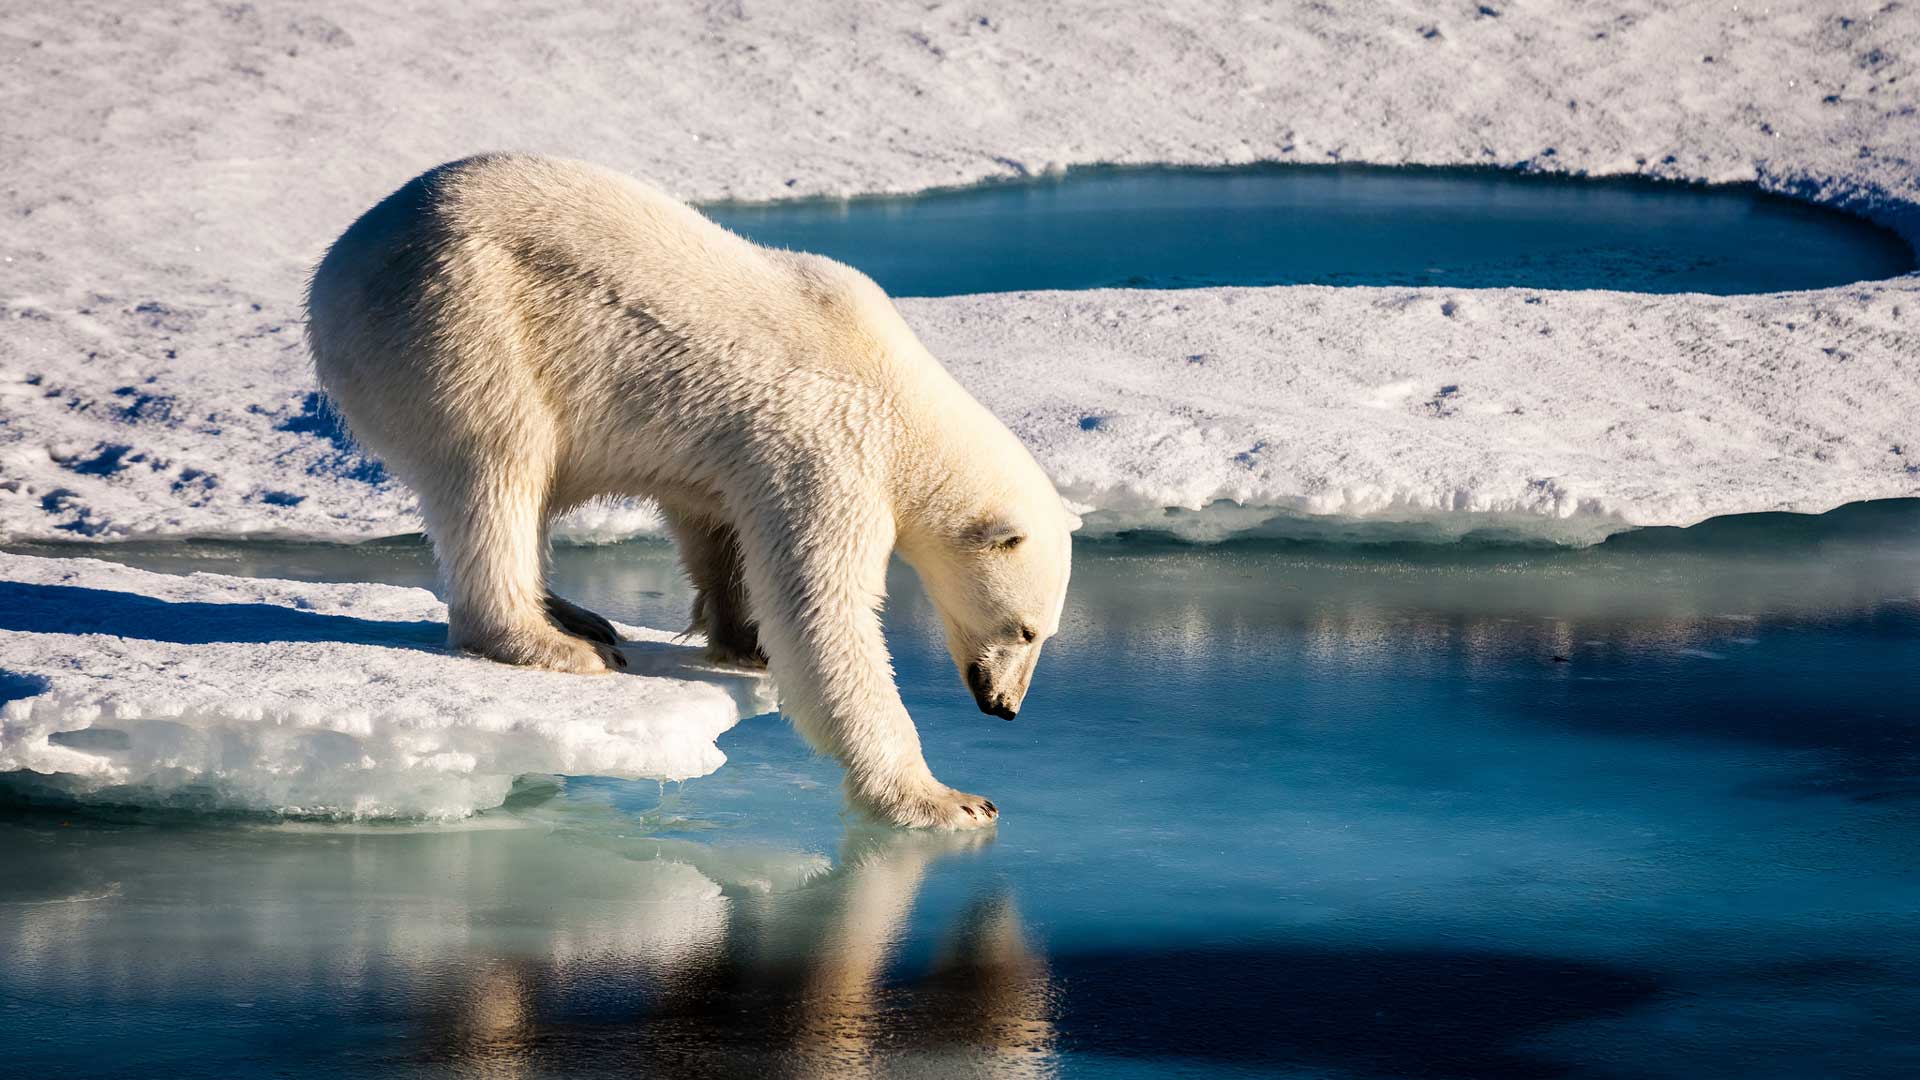 orso-polare-spedizione-polo-nord-robb-report-italia